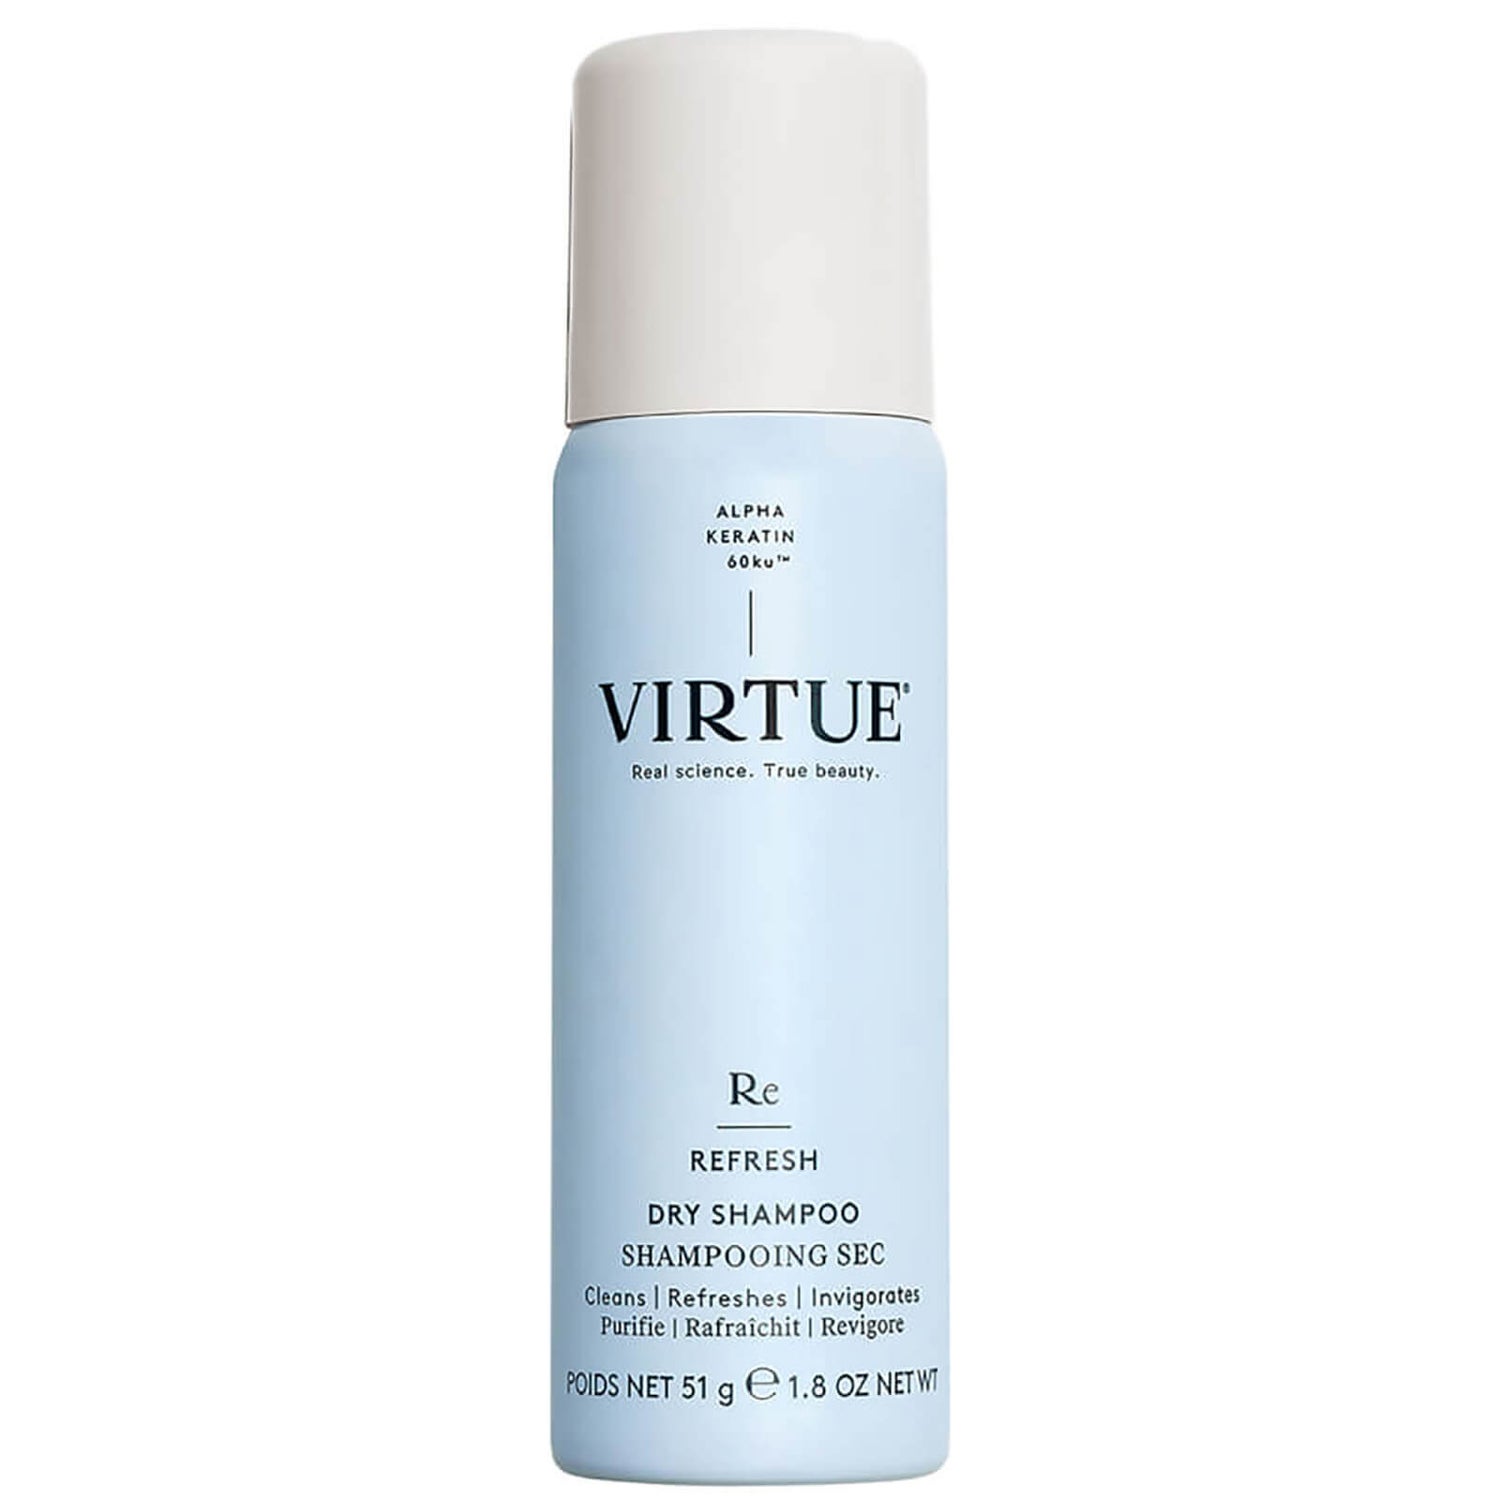 VIRTUE Refresh Dry Shampoo (1.8 oz.)